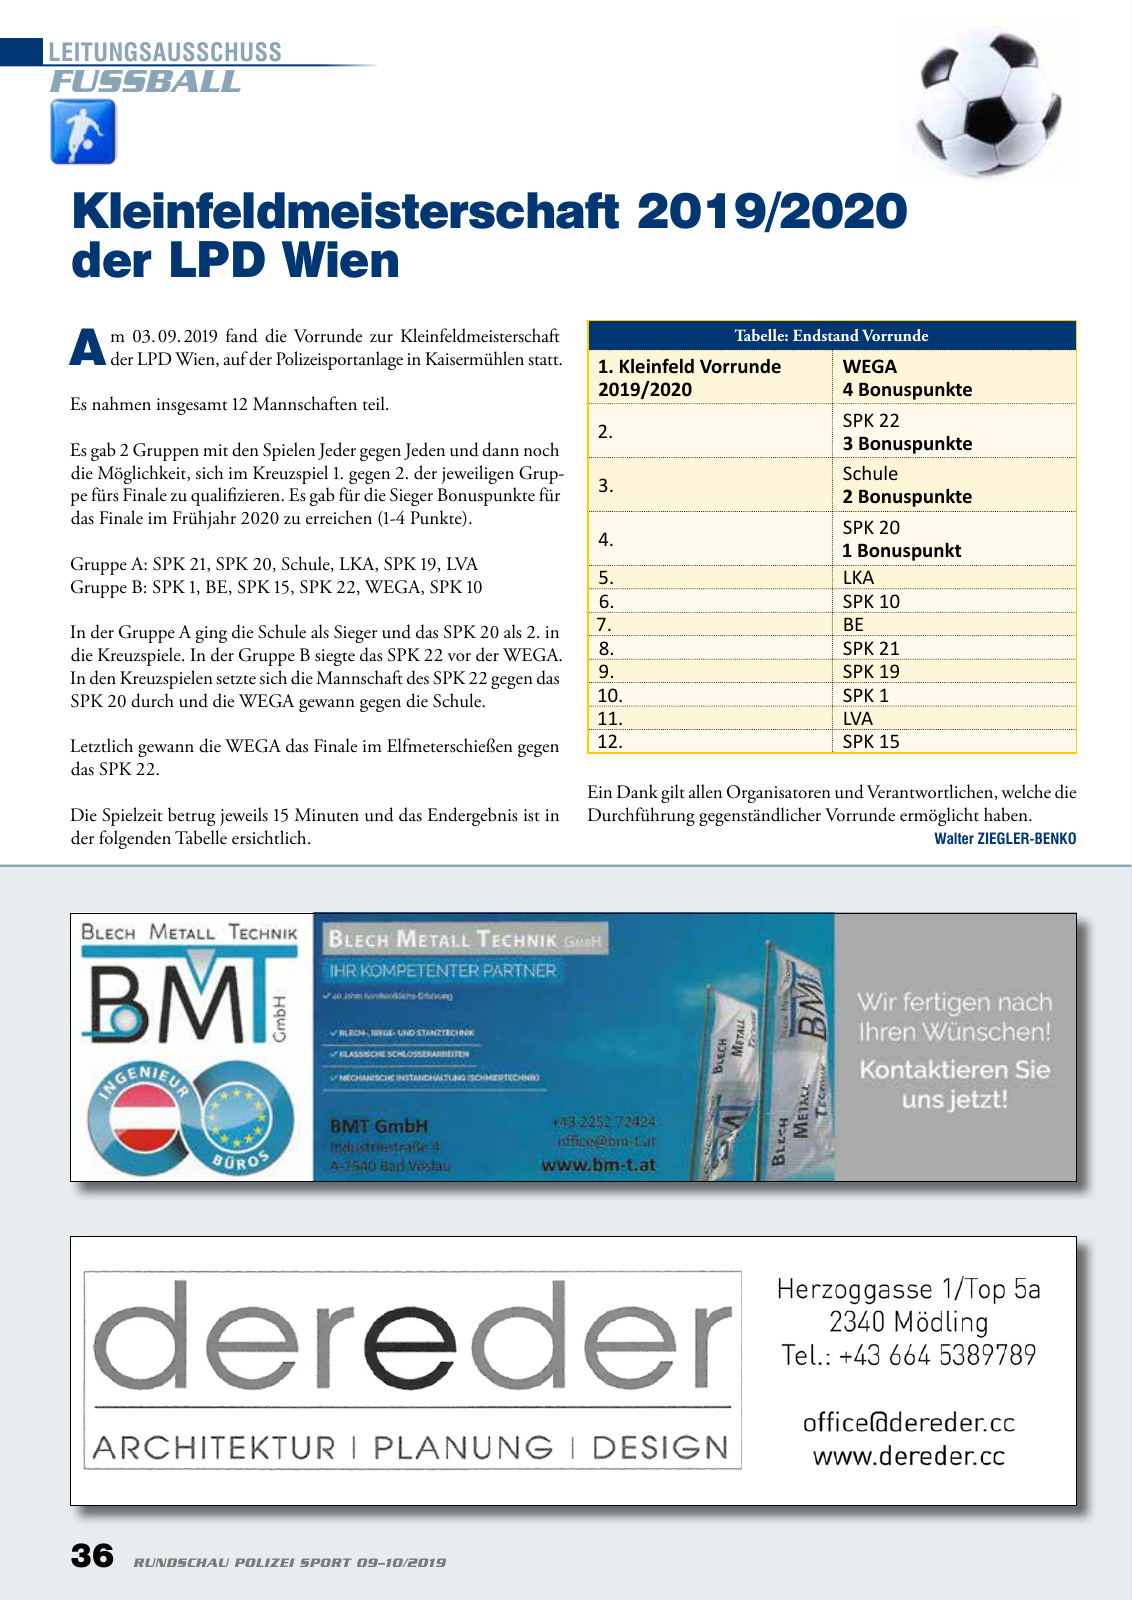 Vorschau Rundschau Polizei Sport 09-10/2019 Seite 36